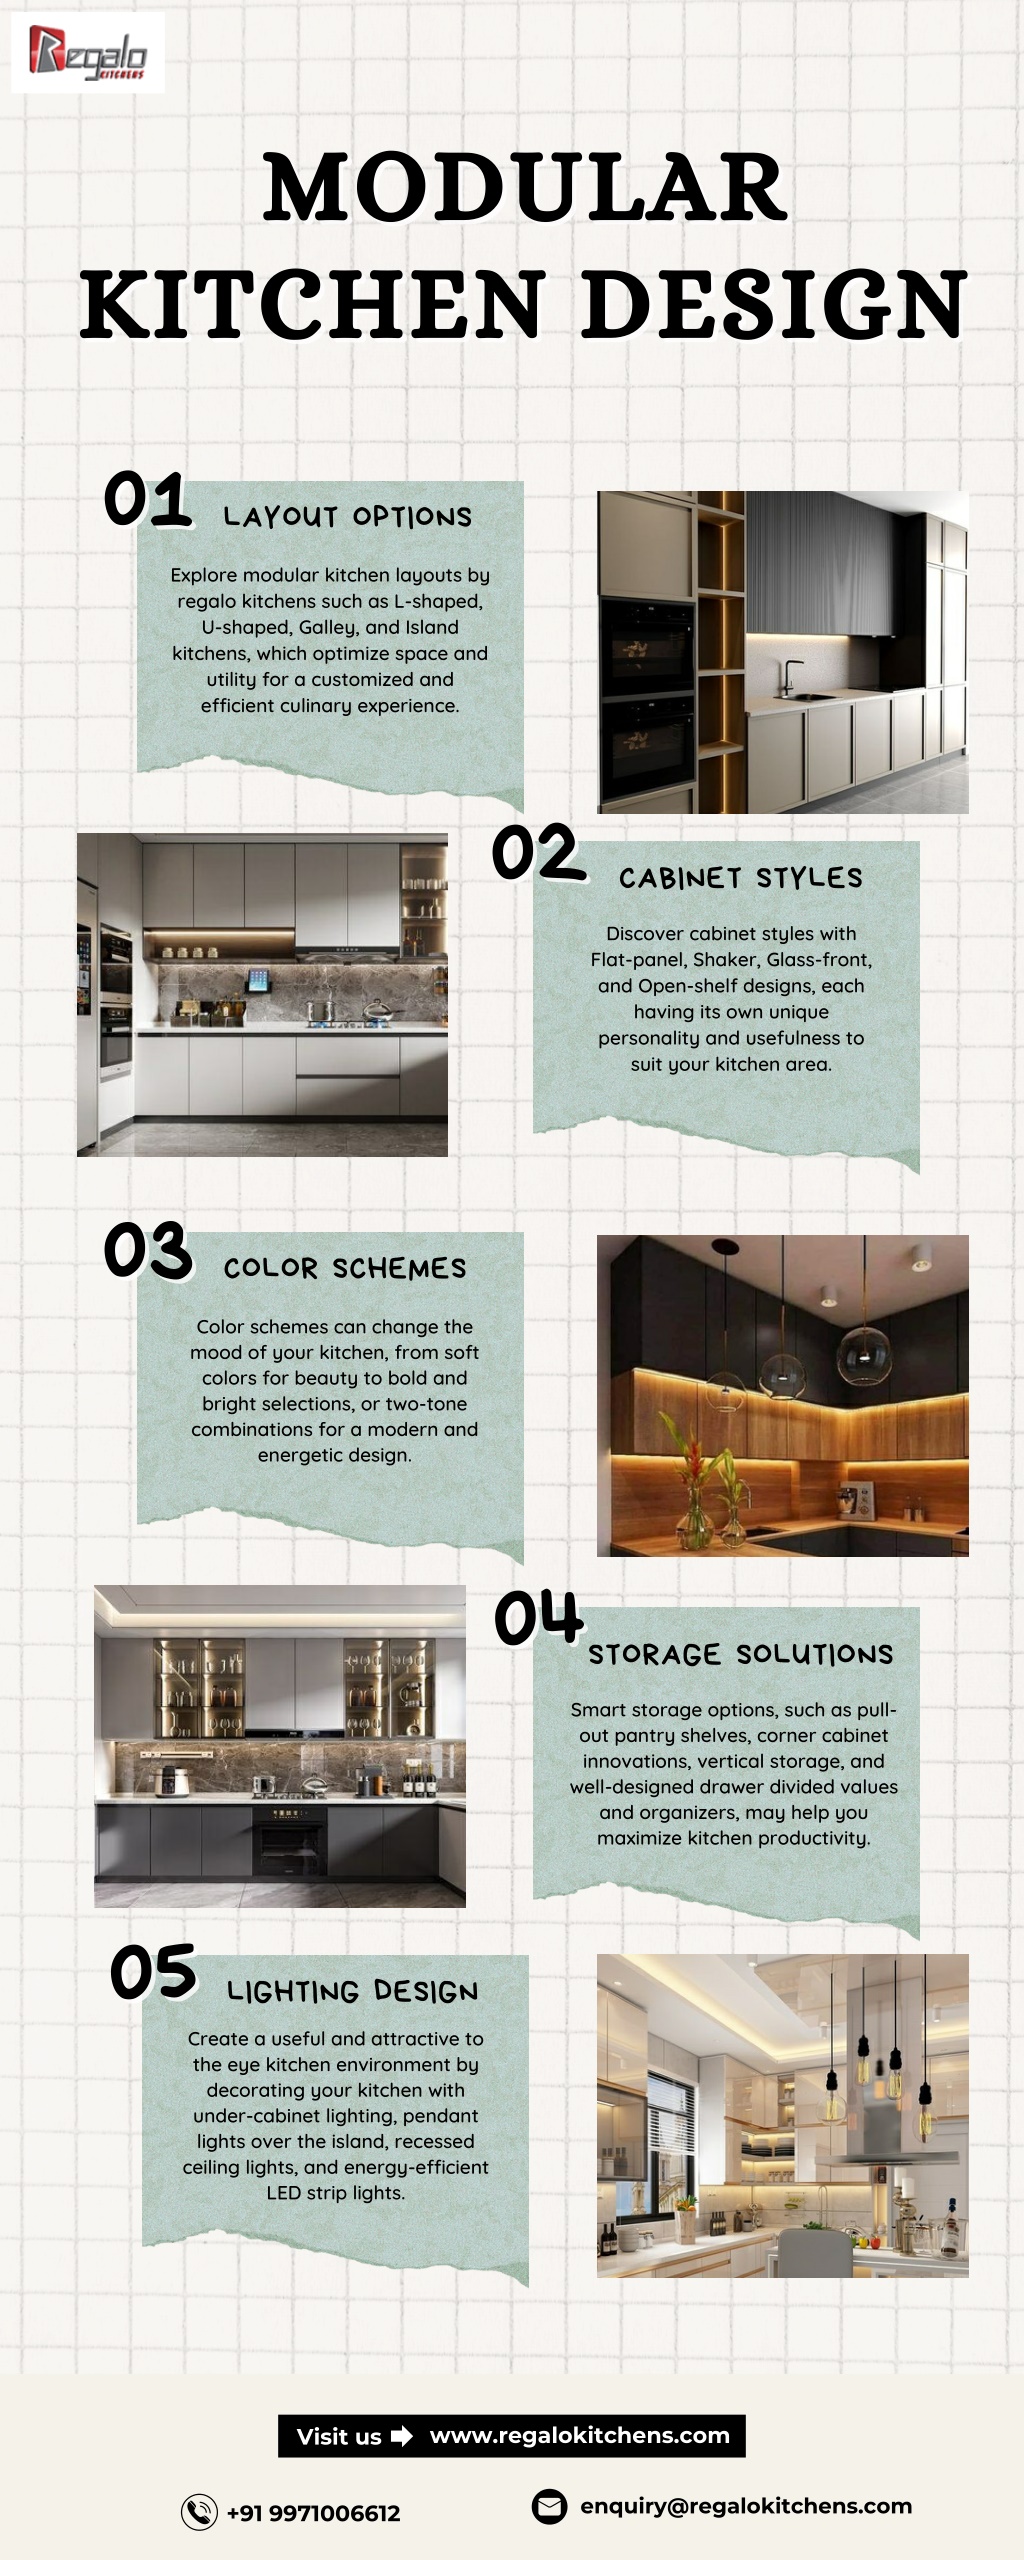 PPT - Modular kitchen Design | Regalo Kitchens PowerPoint Presentation ...